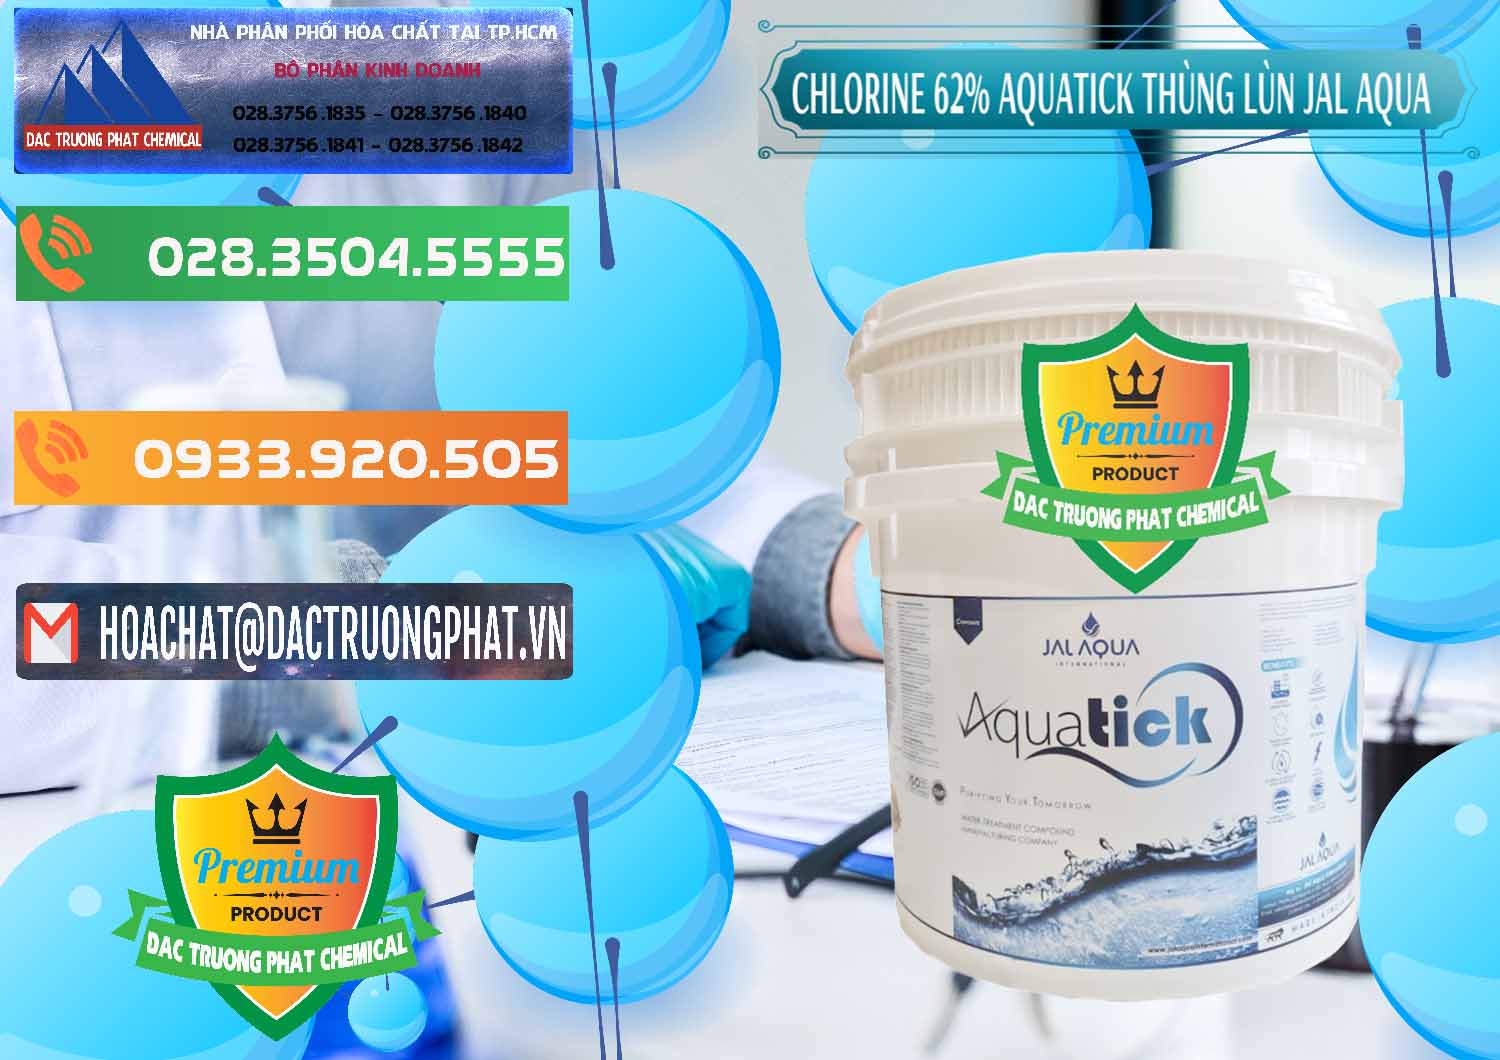 Cty chuyên bán _ phân phối Chlorine – Clorin 62% Aquatick Thùng Lùn Jal Aqua Ấn Độ India - 0238 - Chuyên phân phối - cung cấp hóa chất tại TP.HCM - hoachatxulynuoc.com.vn